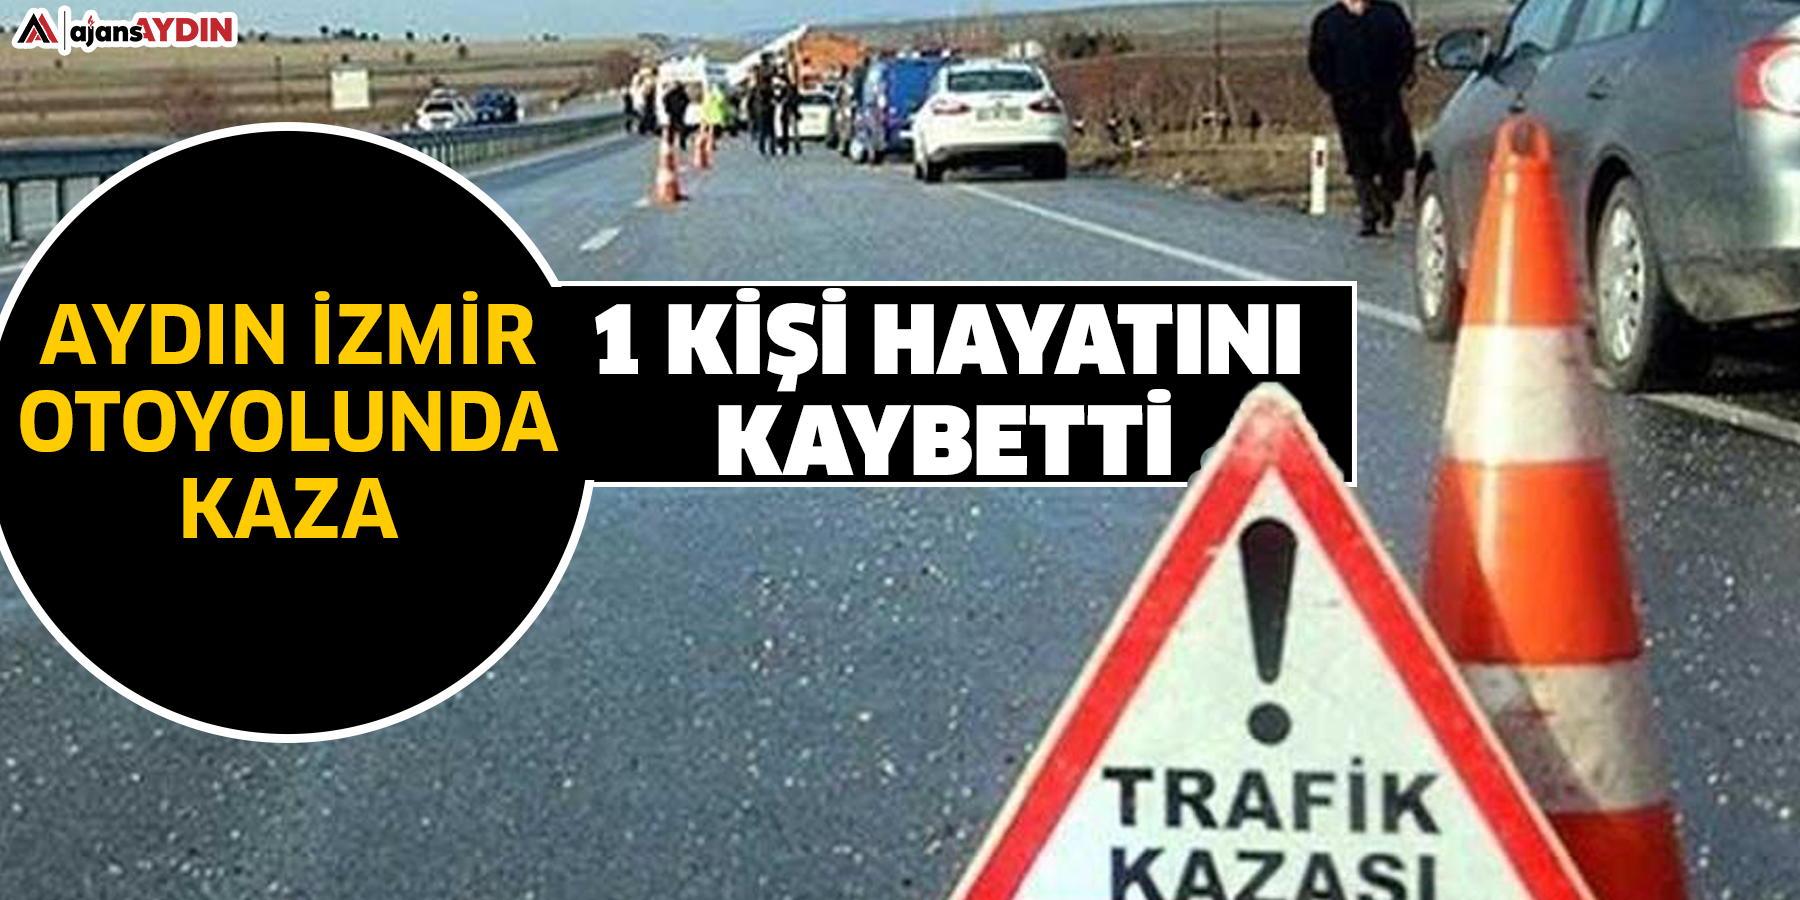 Aydın İzmir otoyolunda kaza  1 kişi hayatını kaybetti